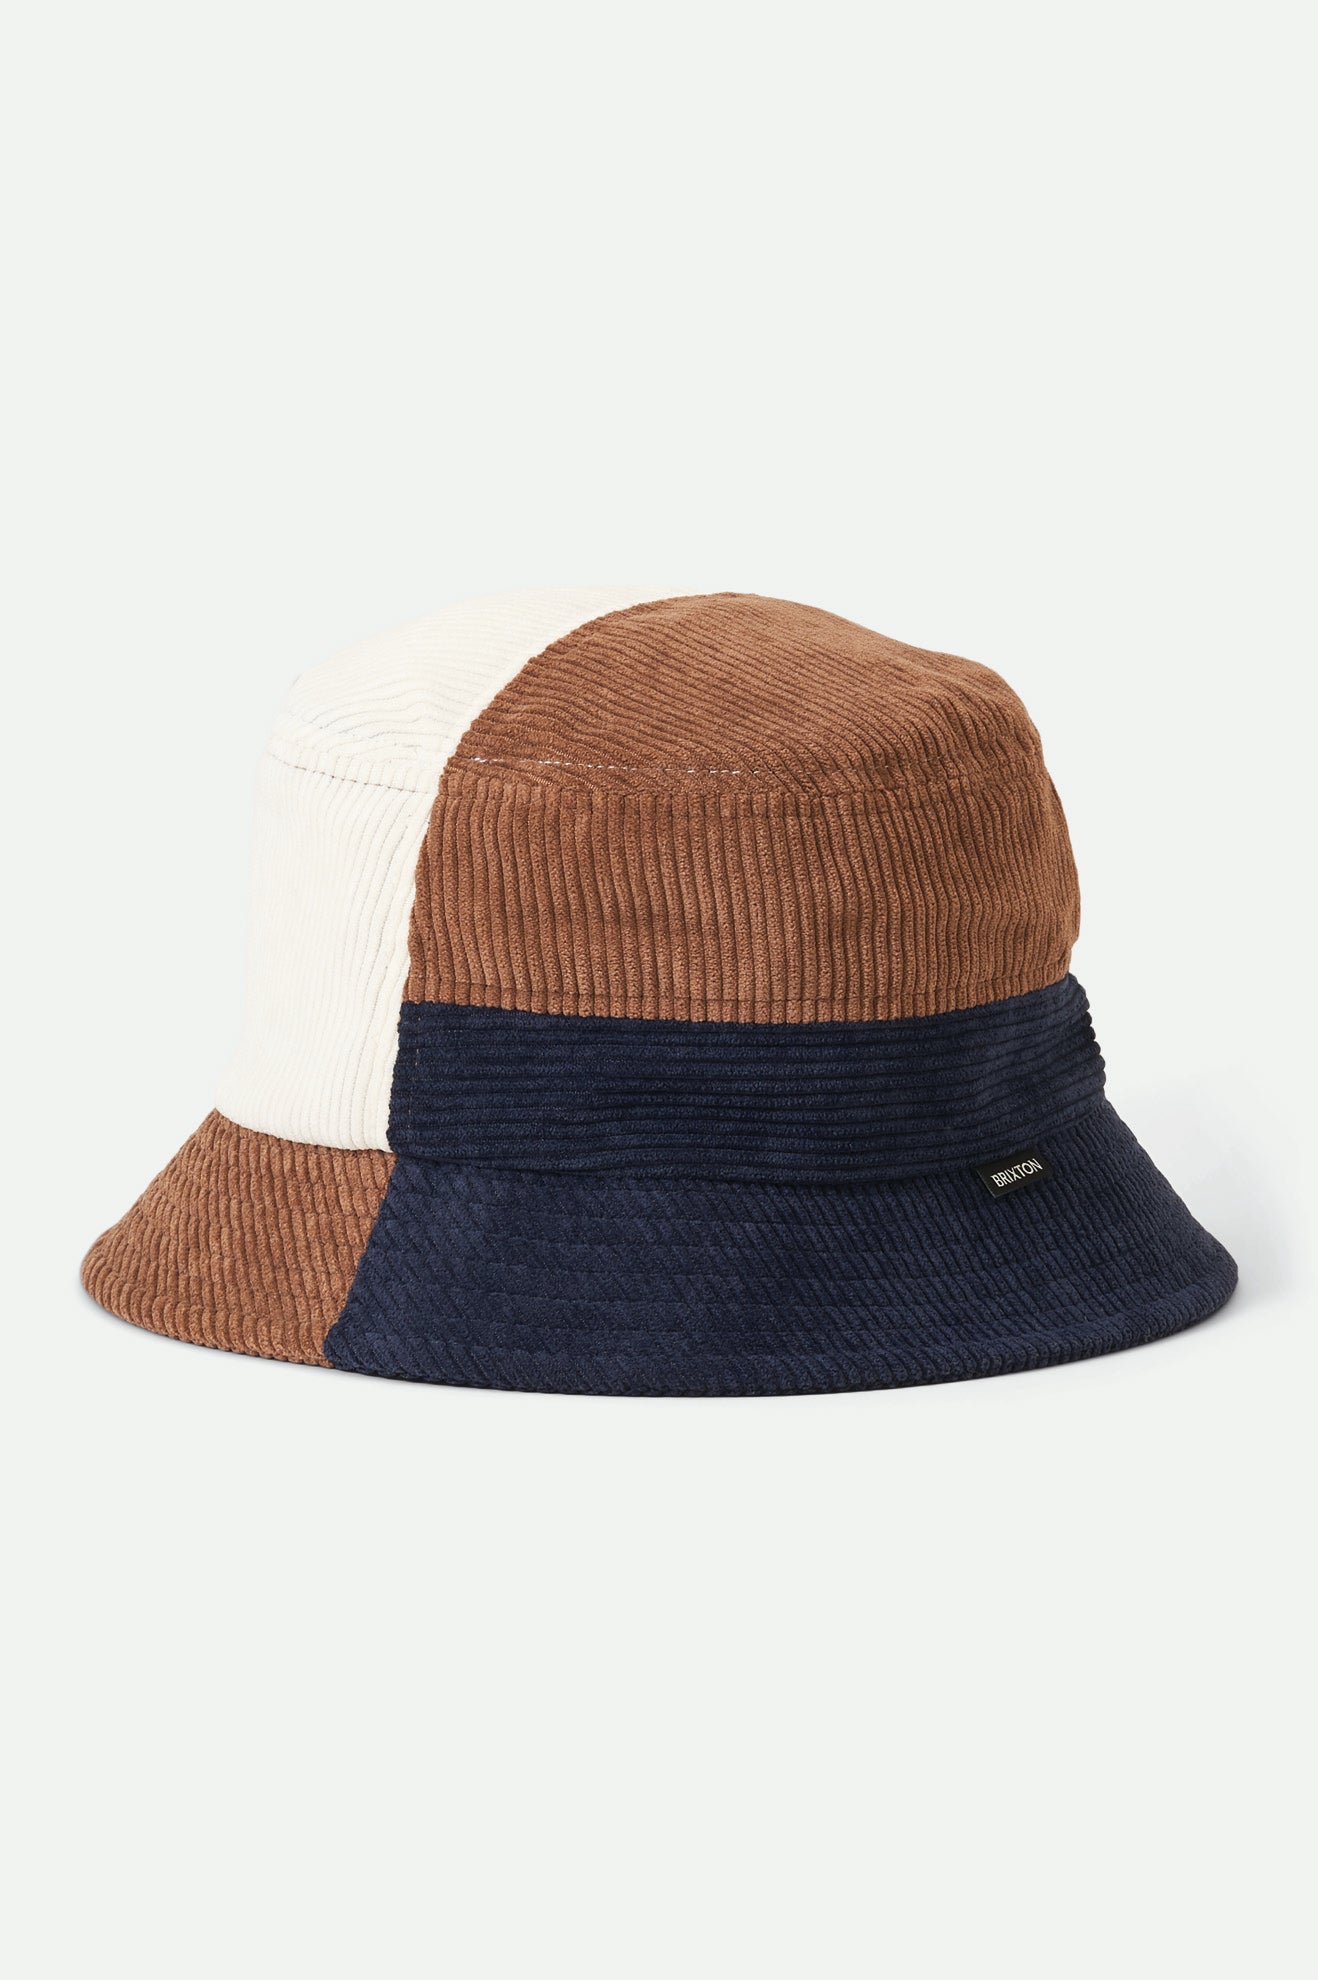 Gramercy Packable Bucket Hat - Navy/Hide